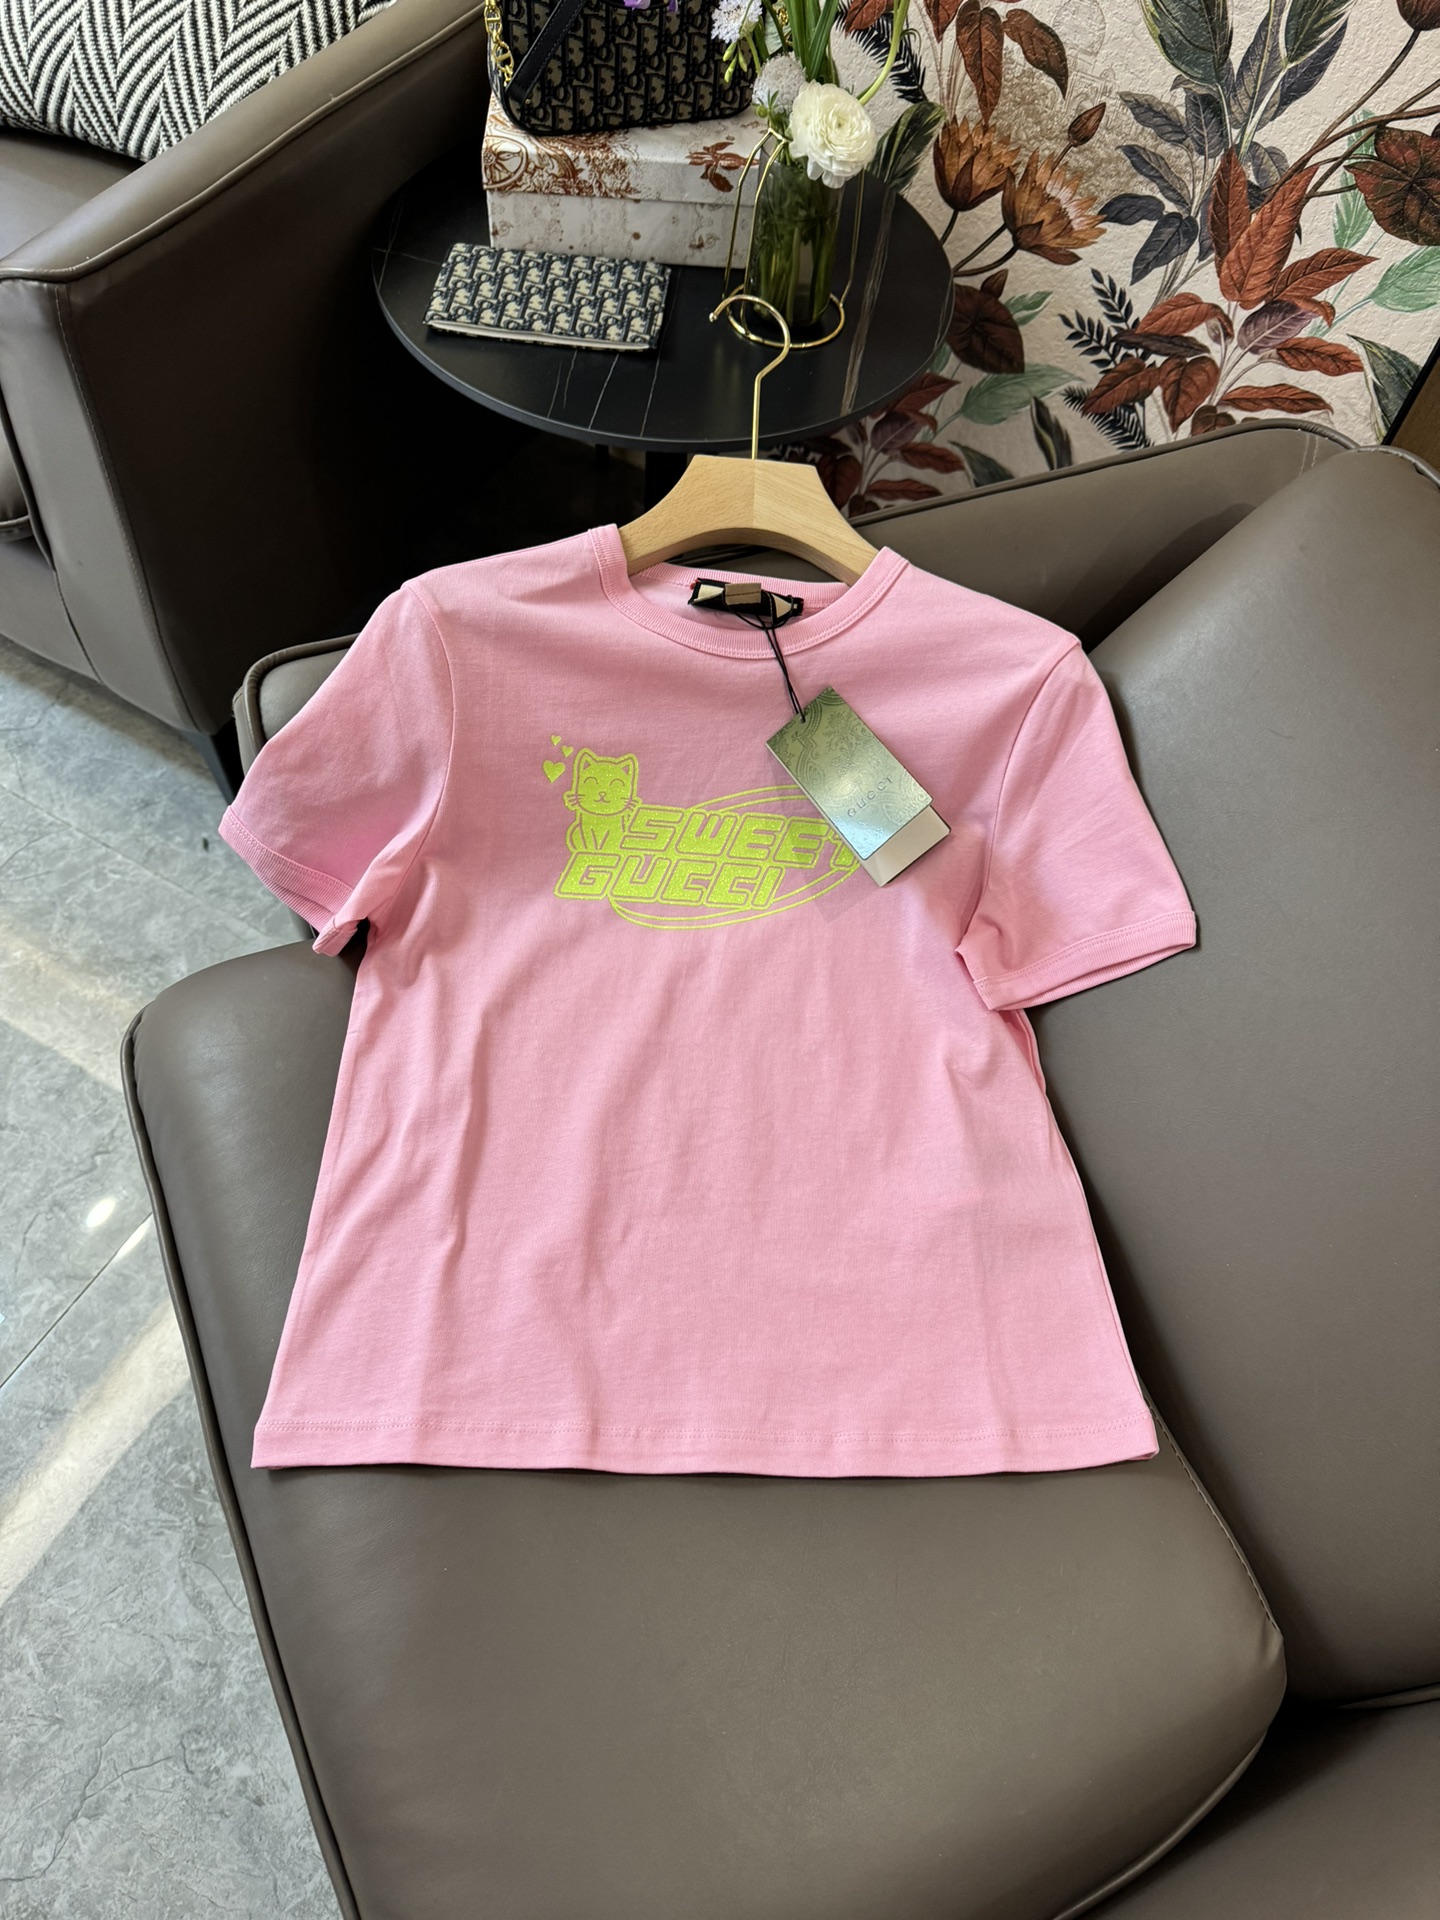 目を引く存在感 グッチ t シャツ偽物 純綿 トップス ネコロゴプリント 半袖 柔らかい シンプル ピンク_1